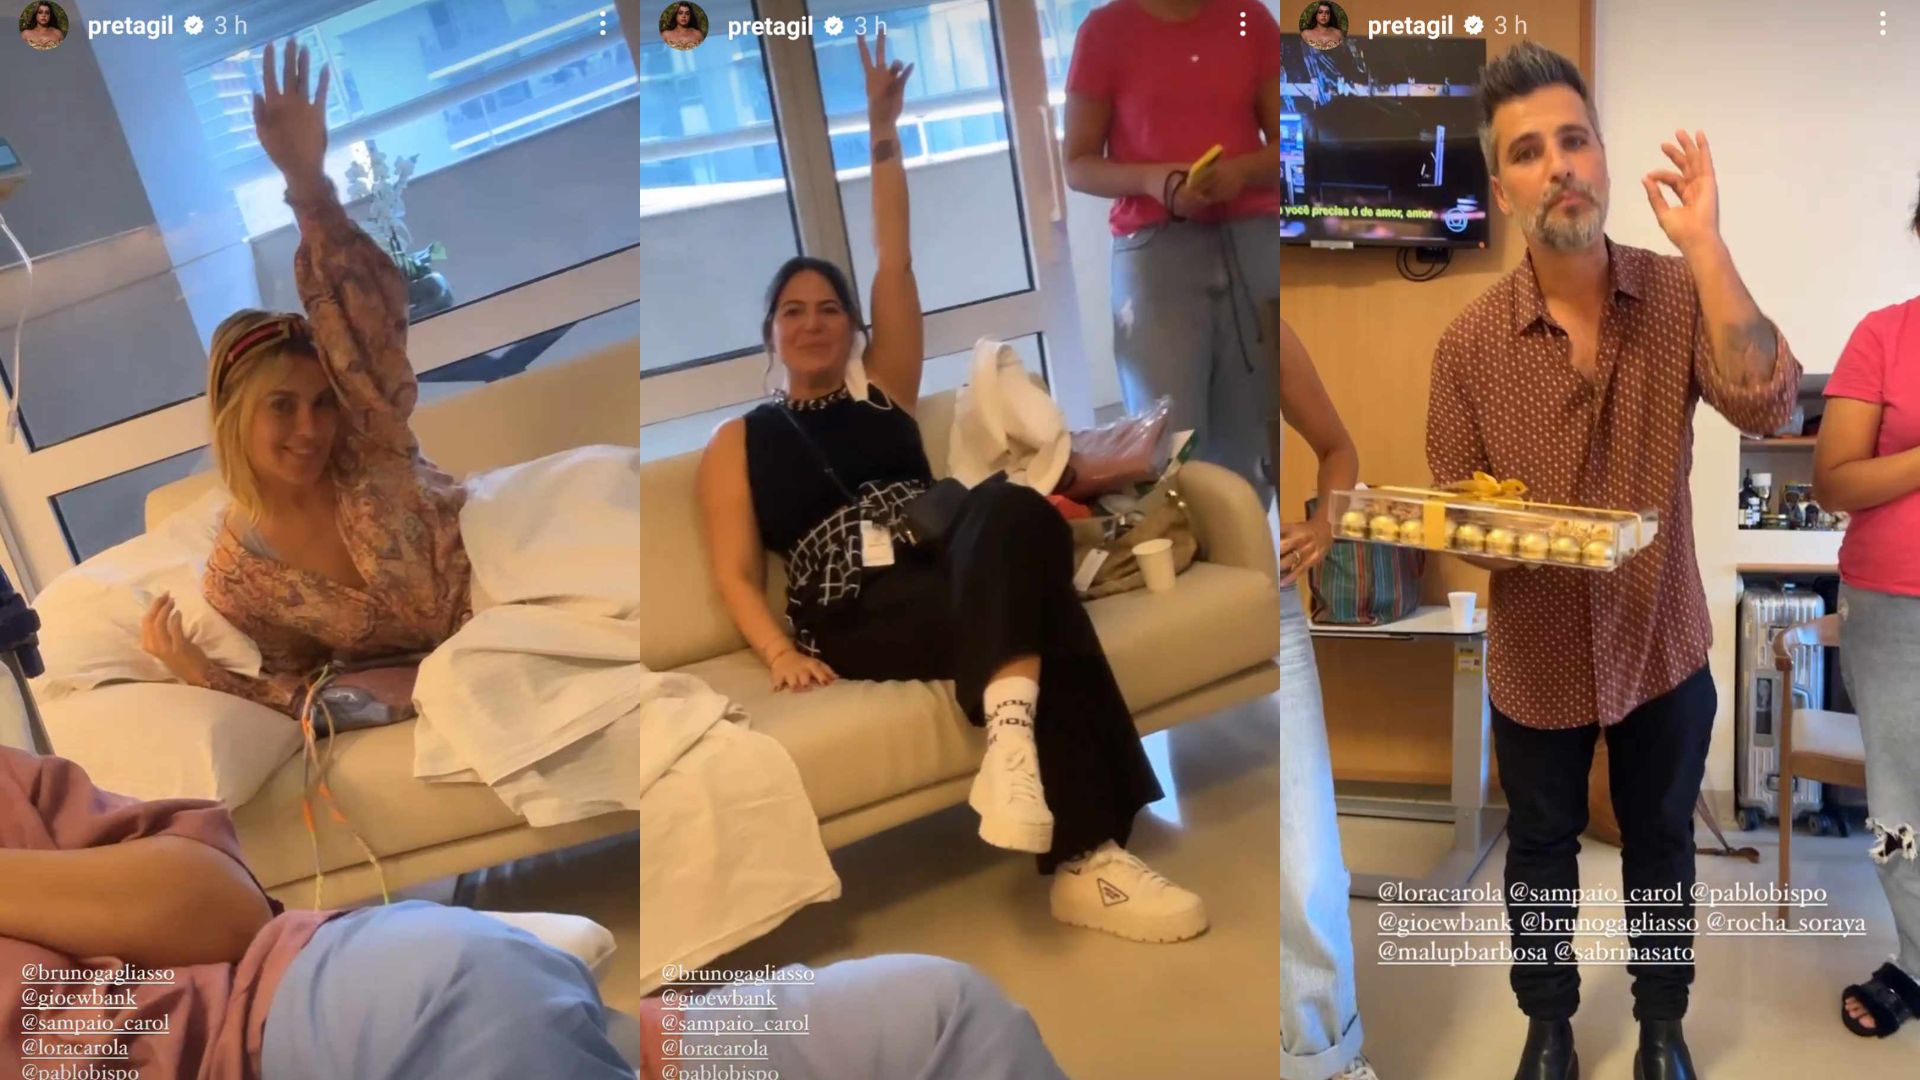 Preta Gil recebe visita surpresa de famosos no hospital: "Vieram me ver"